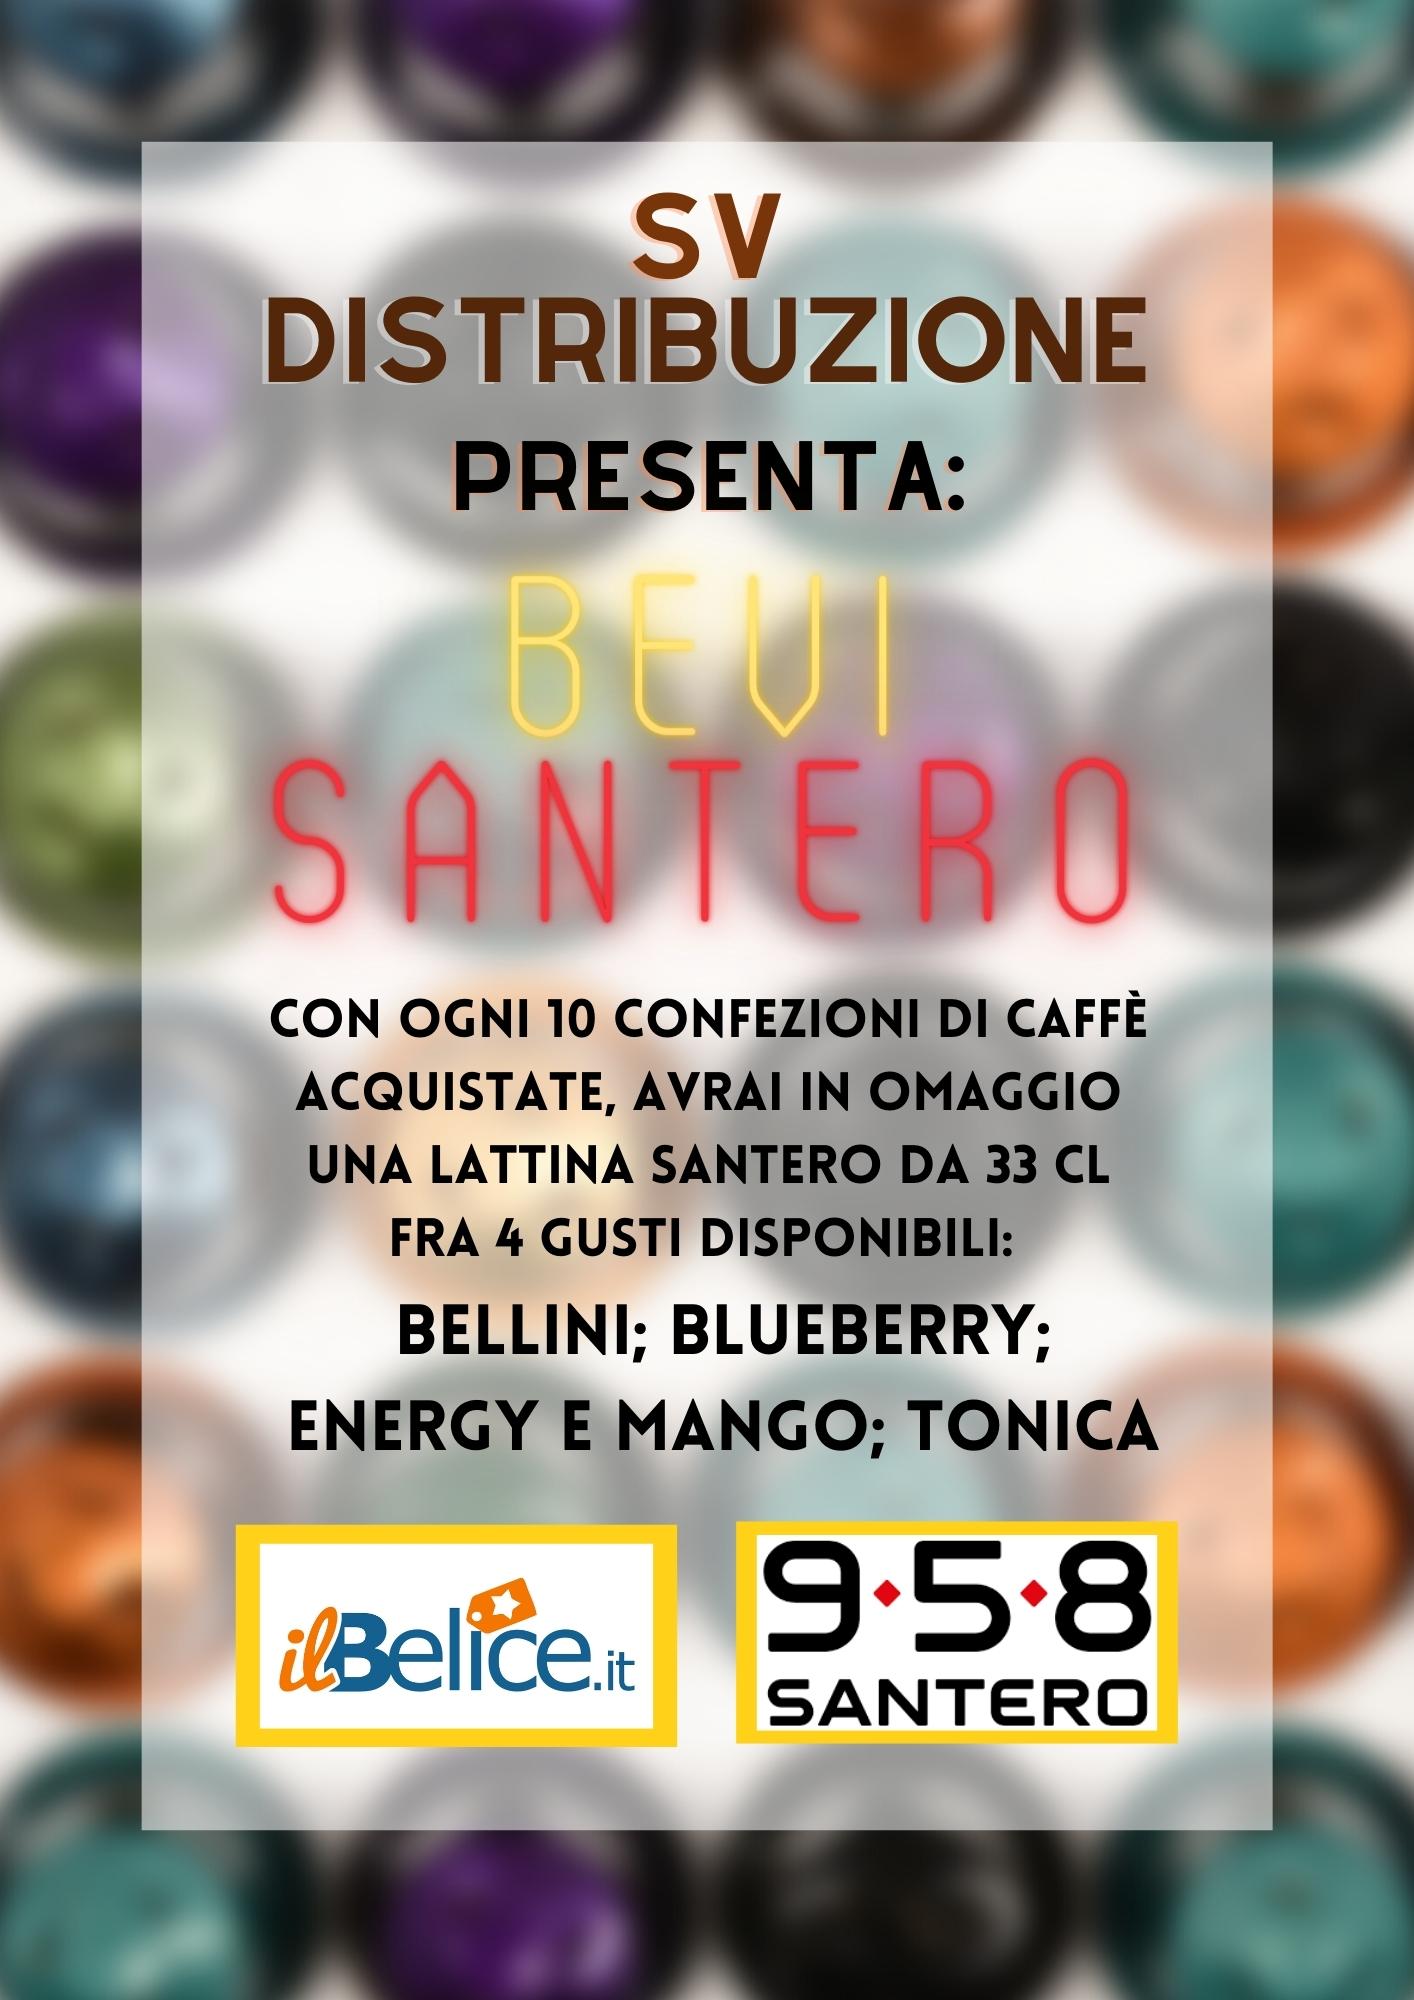 Promozione Speciale: Bevi Santero!